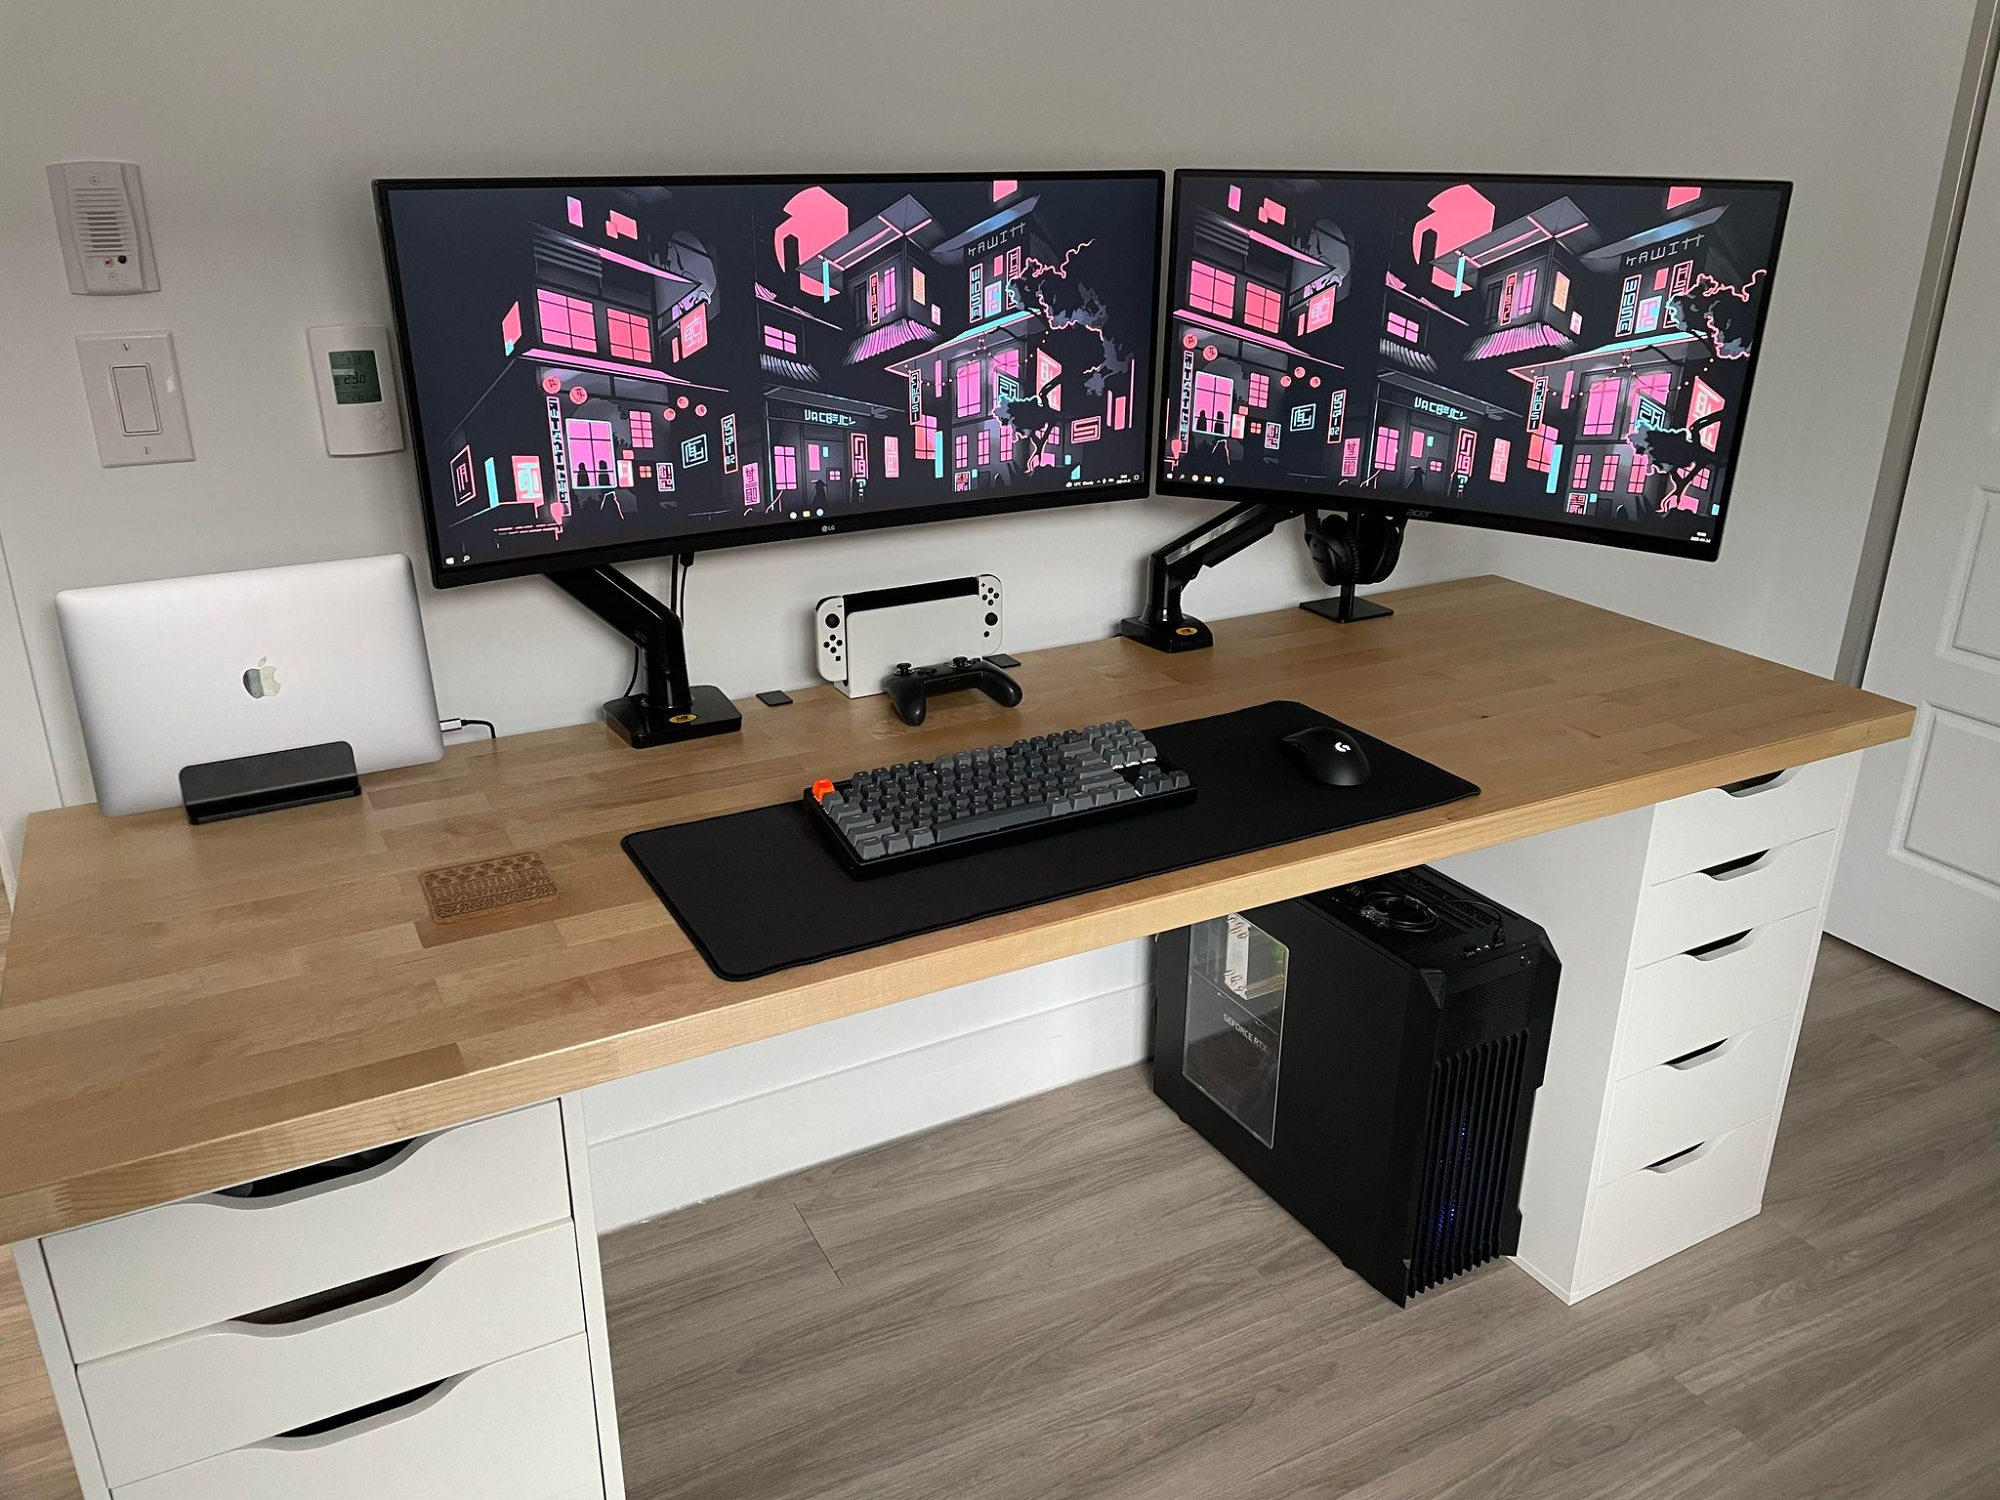 Simple and sturdy IKEA KARLBY & ALEX desk setup